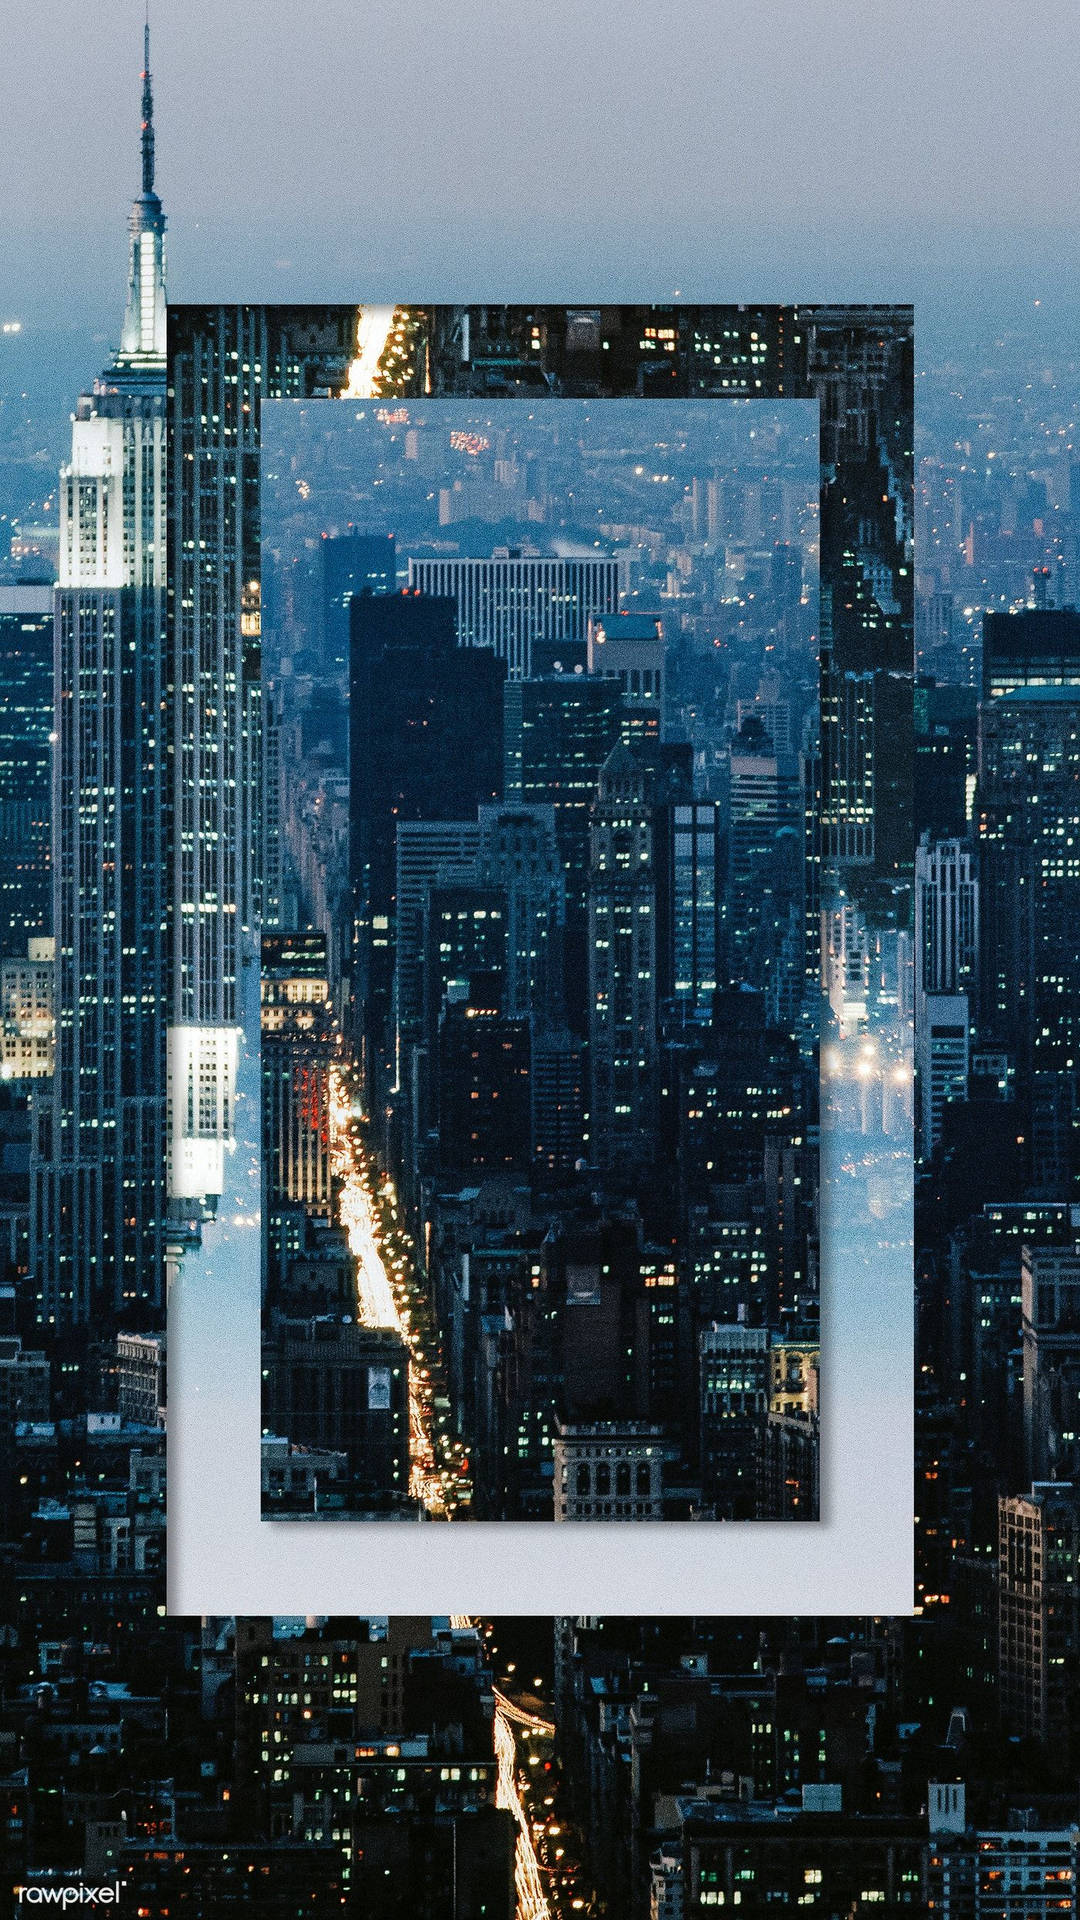 Marcopara Iphone X Con La Imagen De La Ciudad De Nueva York. Fondo de pantalla